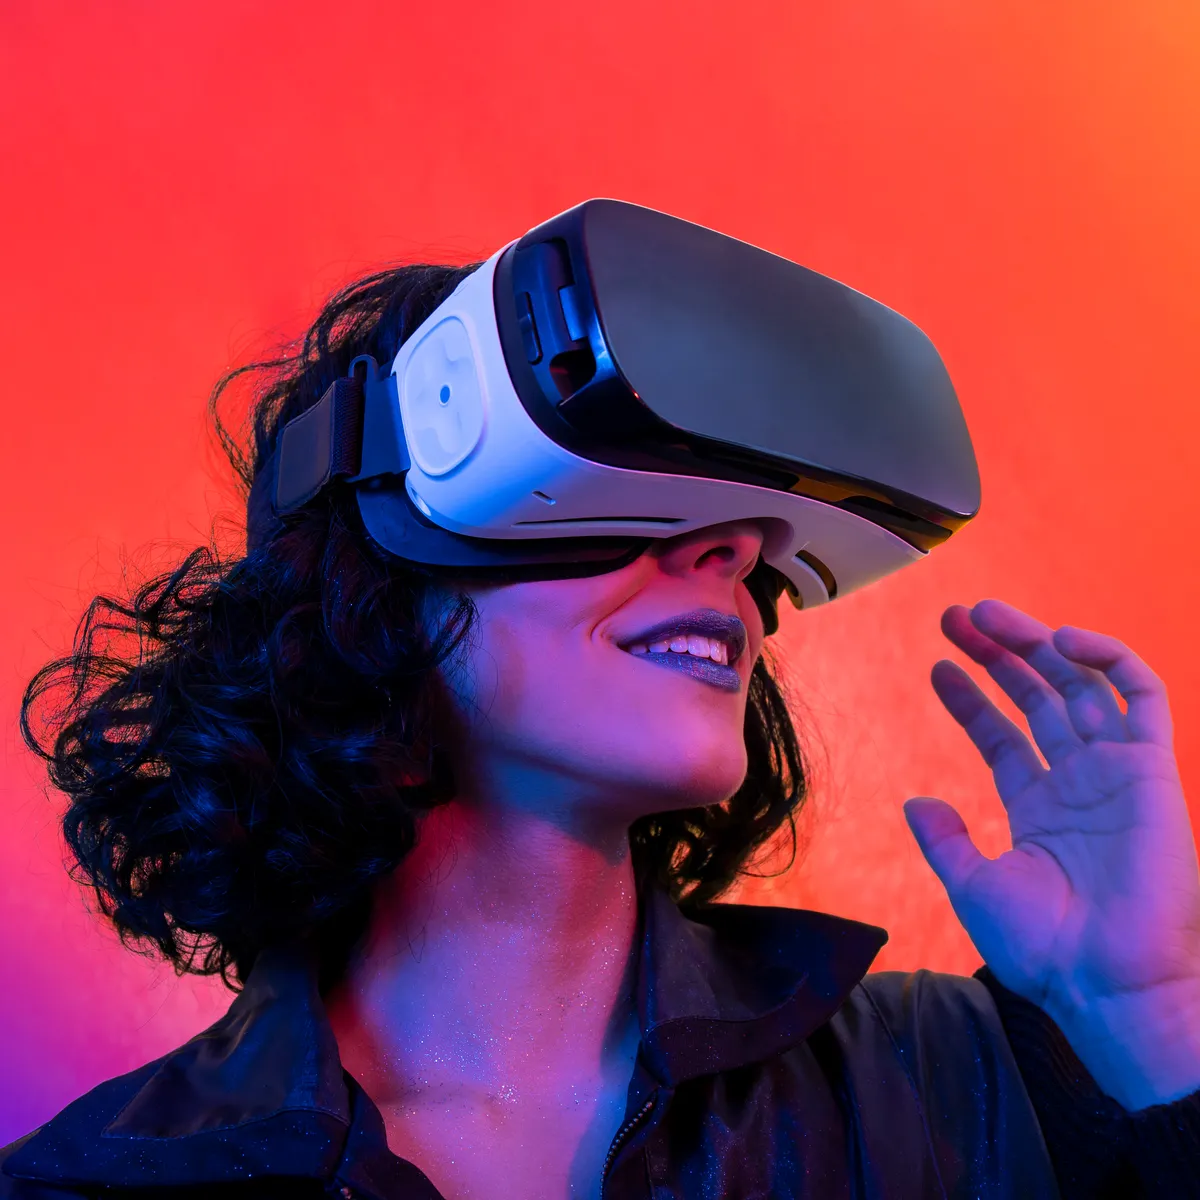 VR热潮已过去？调查显示2022年VR/AR设备出货量下降20%